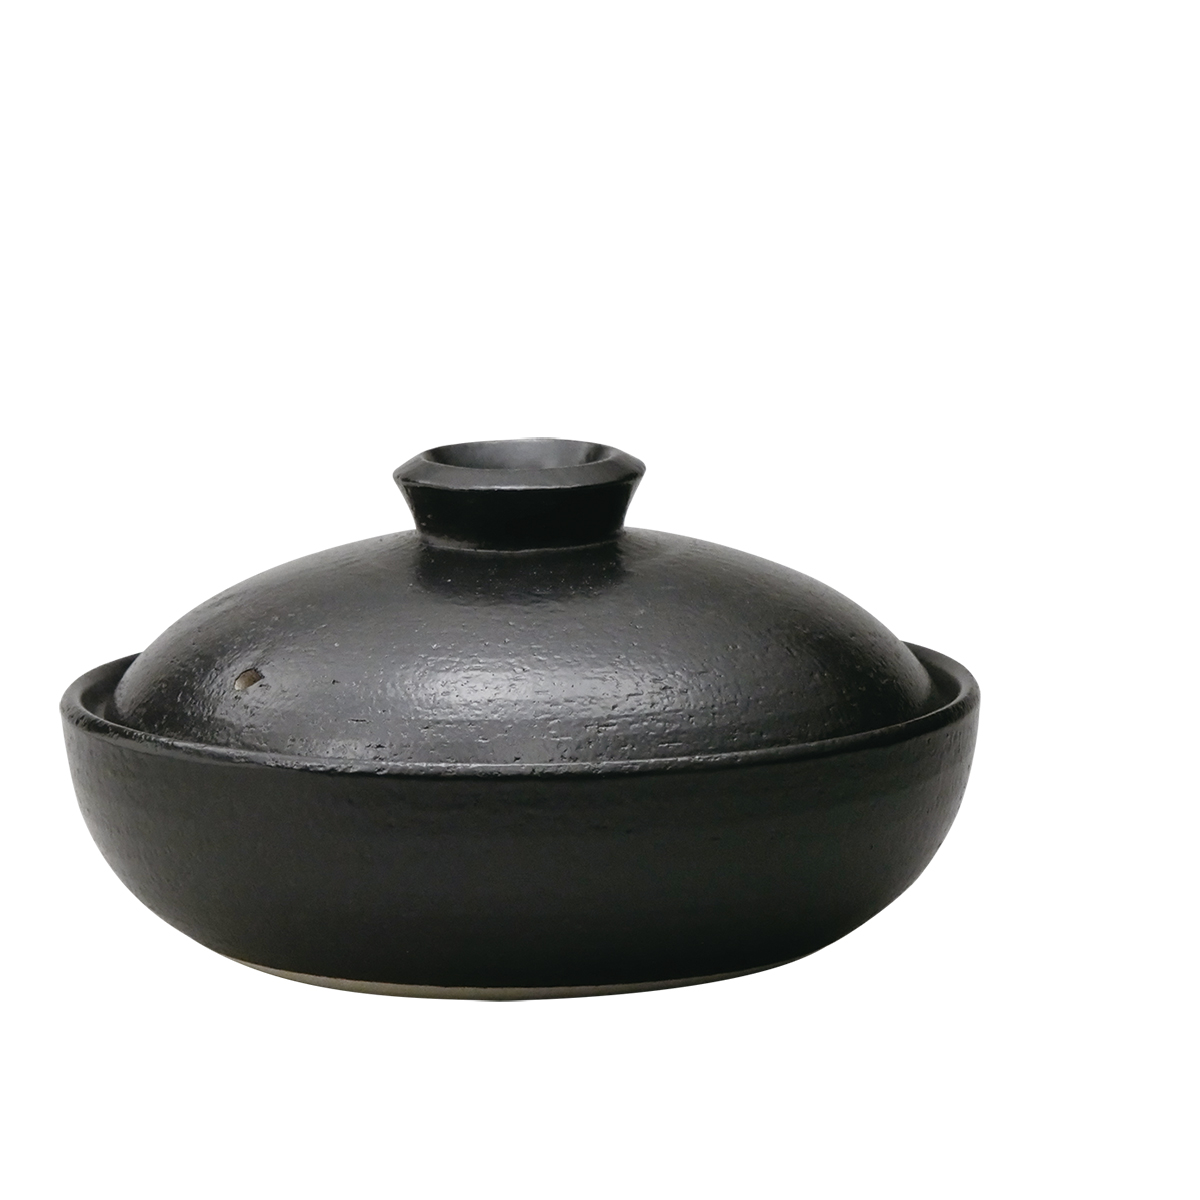 日常茶飯器 黒 7.5号平鍋(持ち手なし)